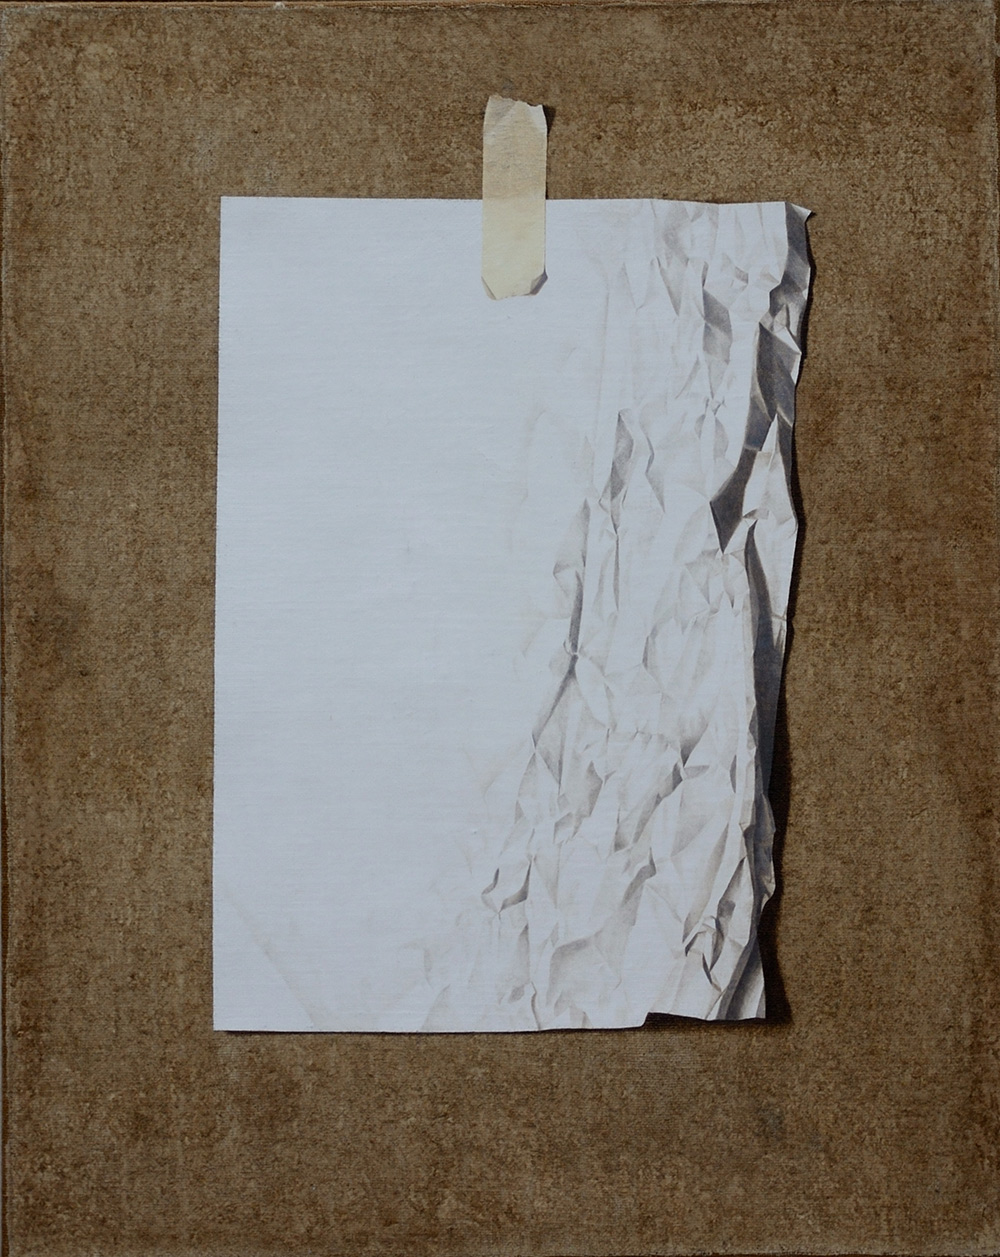 Life n°2, 2010, Olio su tela, 160 x 100 cm